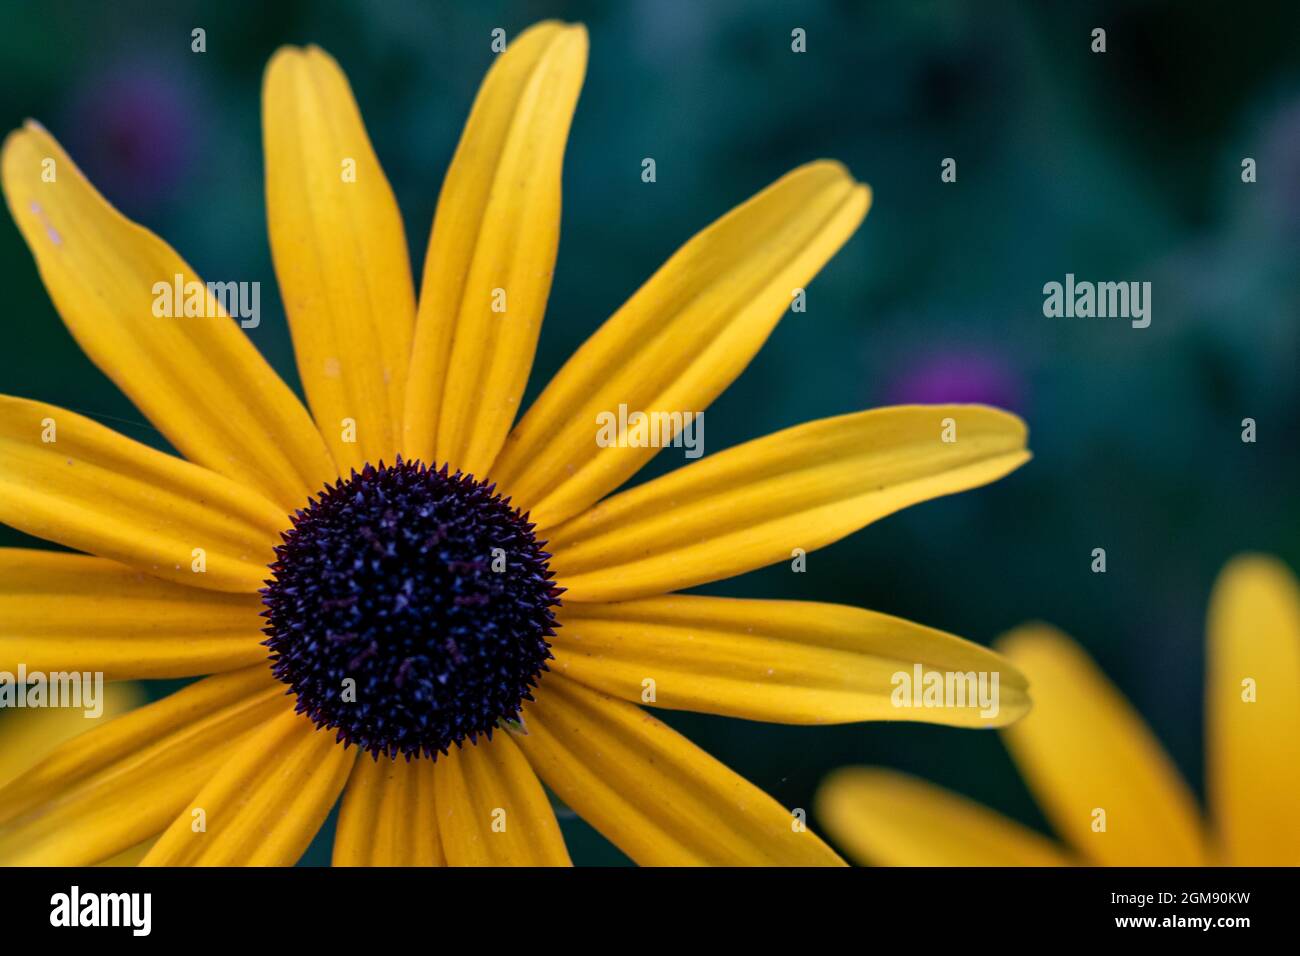 Fiore giallo Rudbeckia, anche coneflower o black-eyed-susan, primo piano e fuoco selettivo Foto Stock